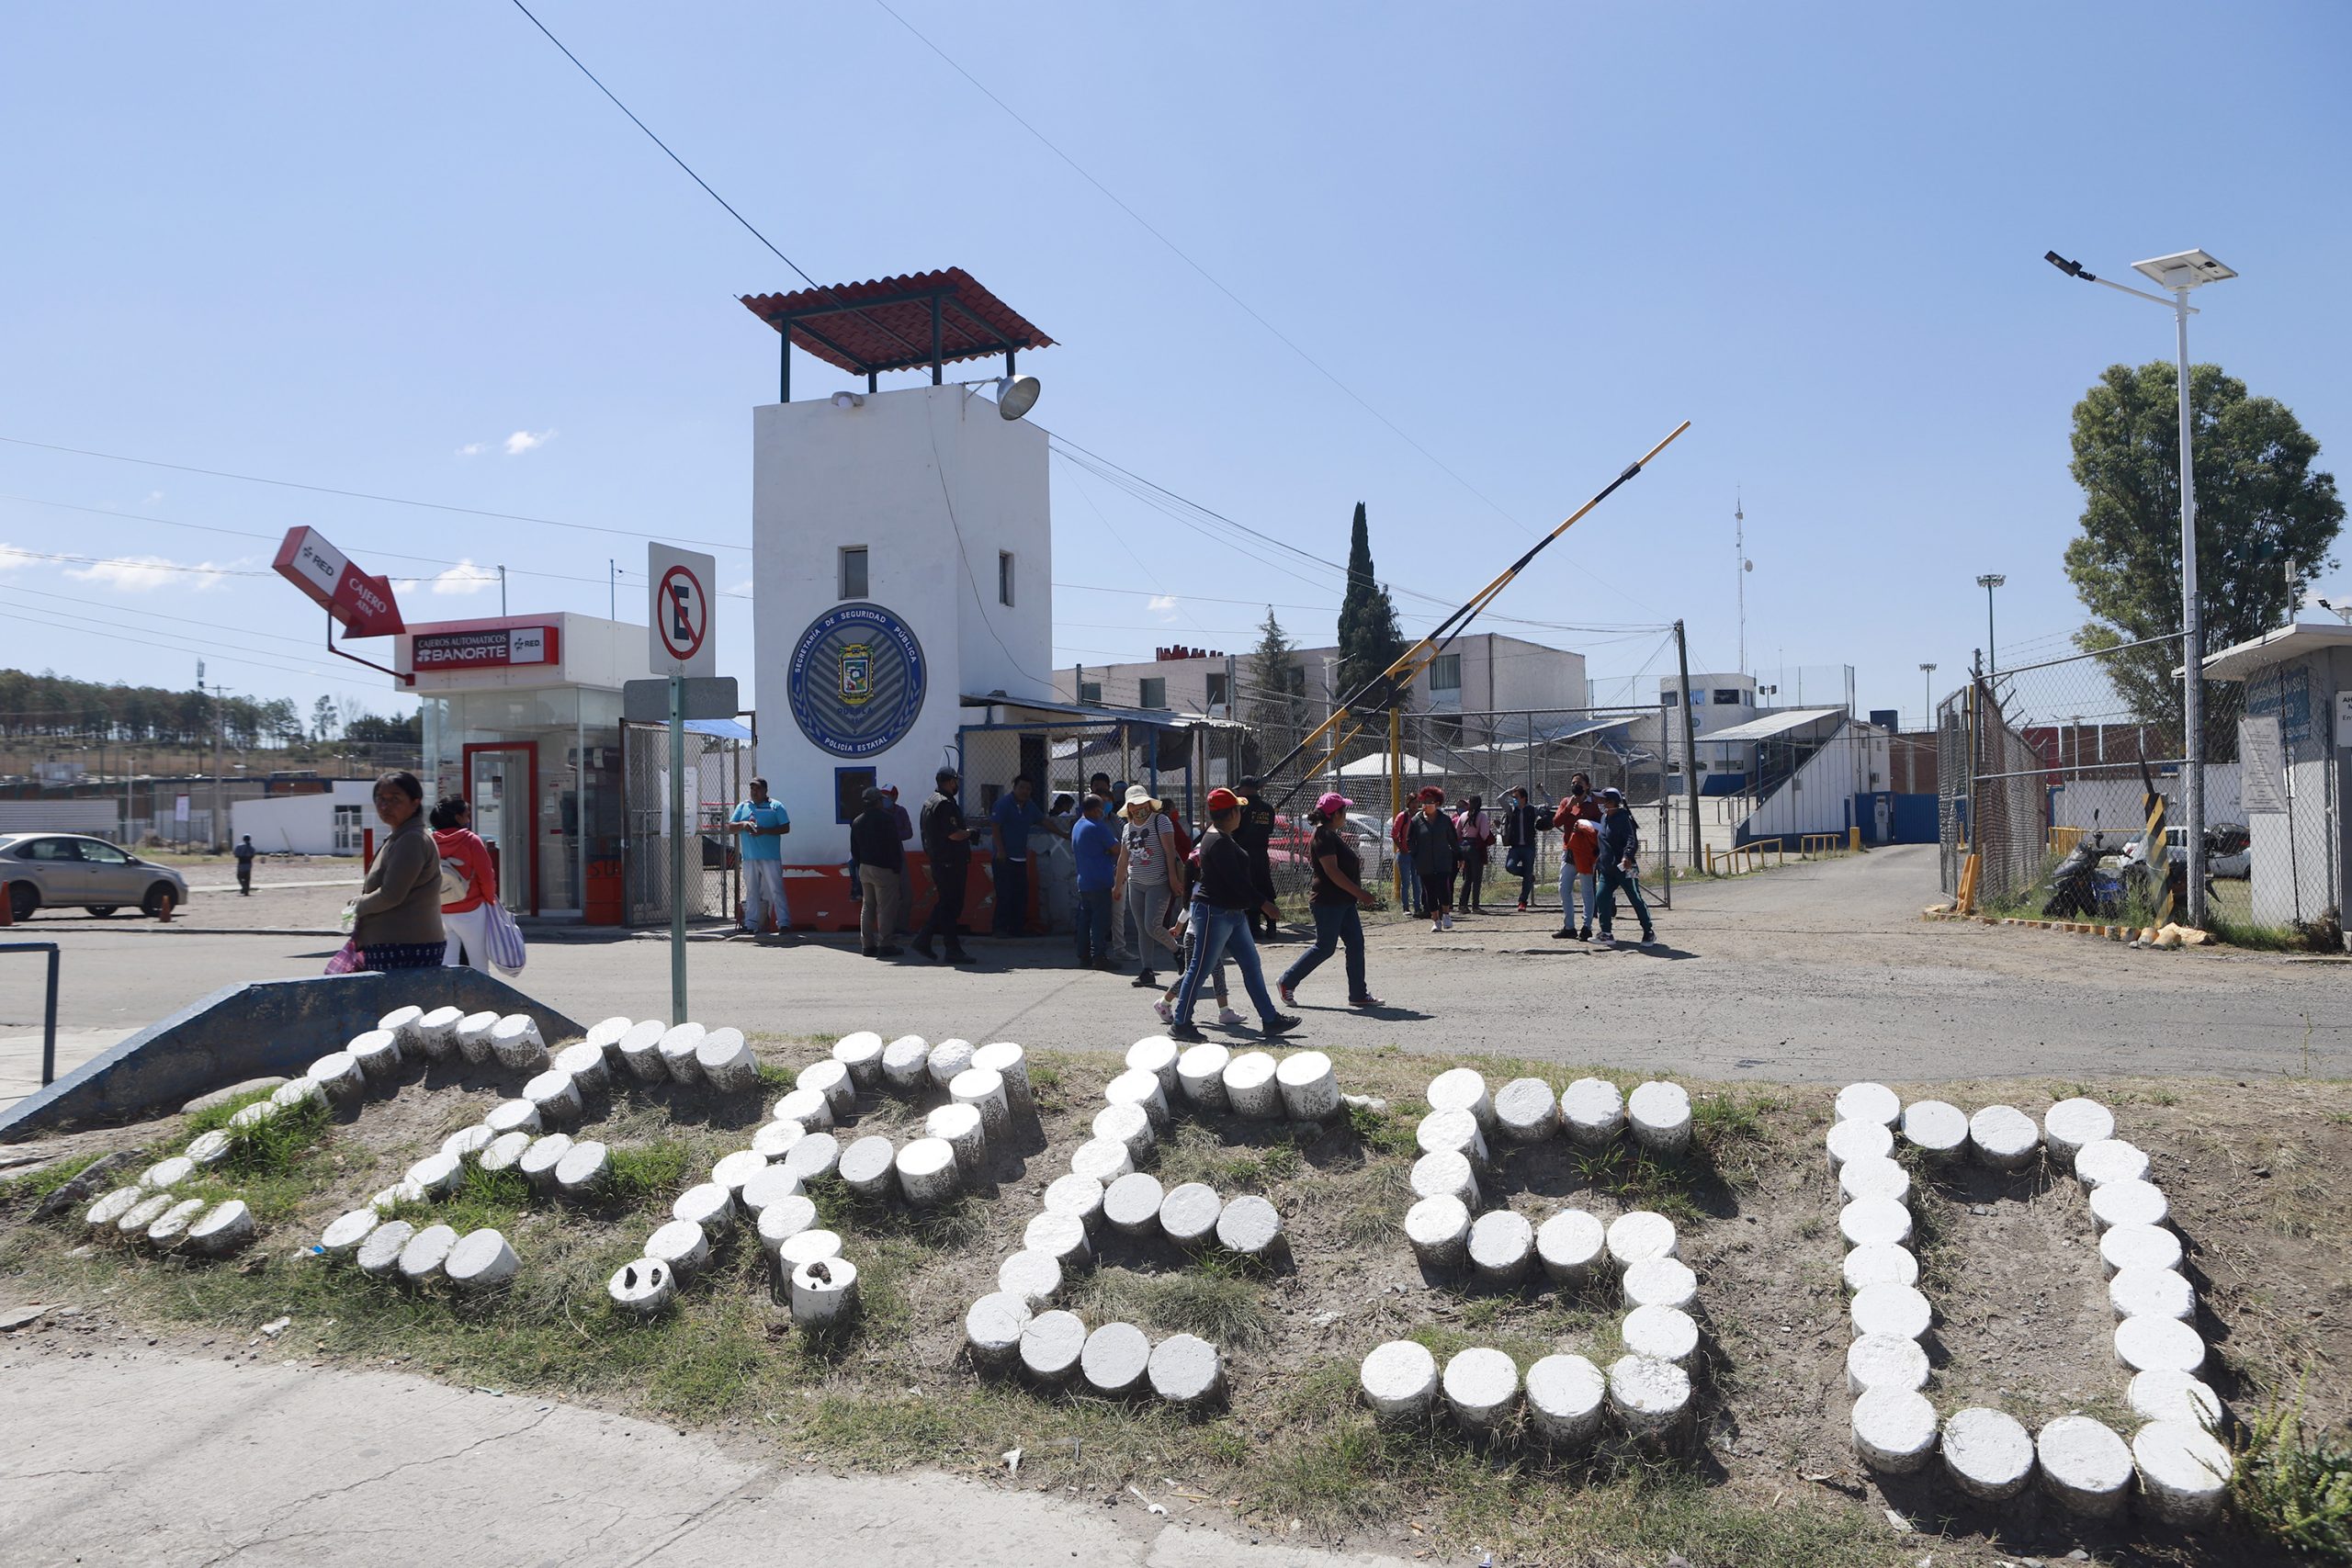 Siete de cada 10 personas en prisión de Puebla, sin sentencia; llevan más de un año recluidos